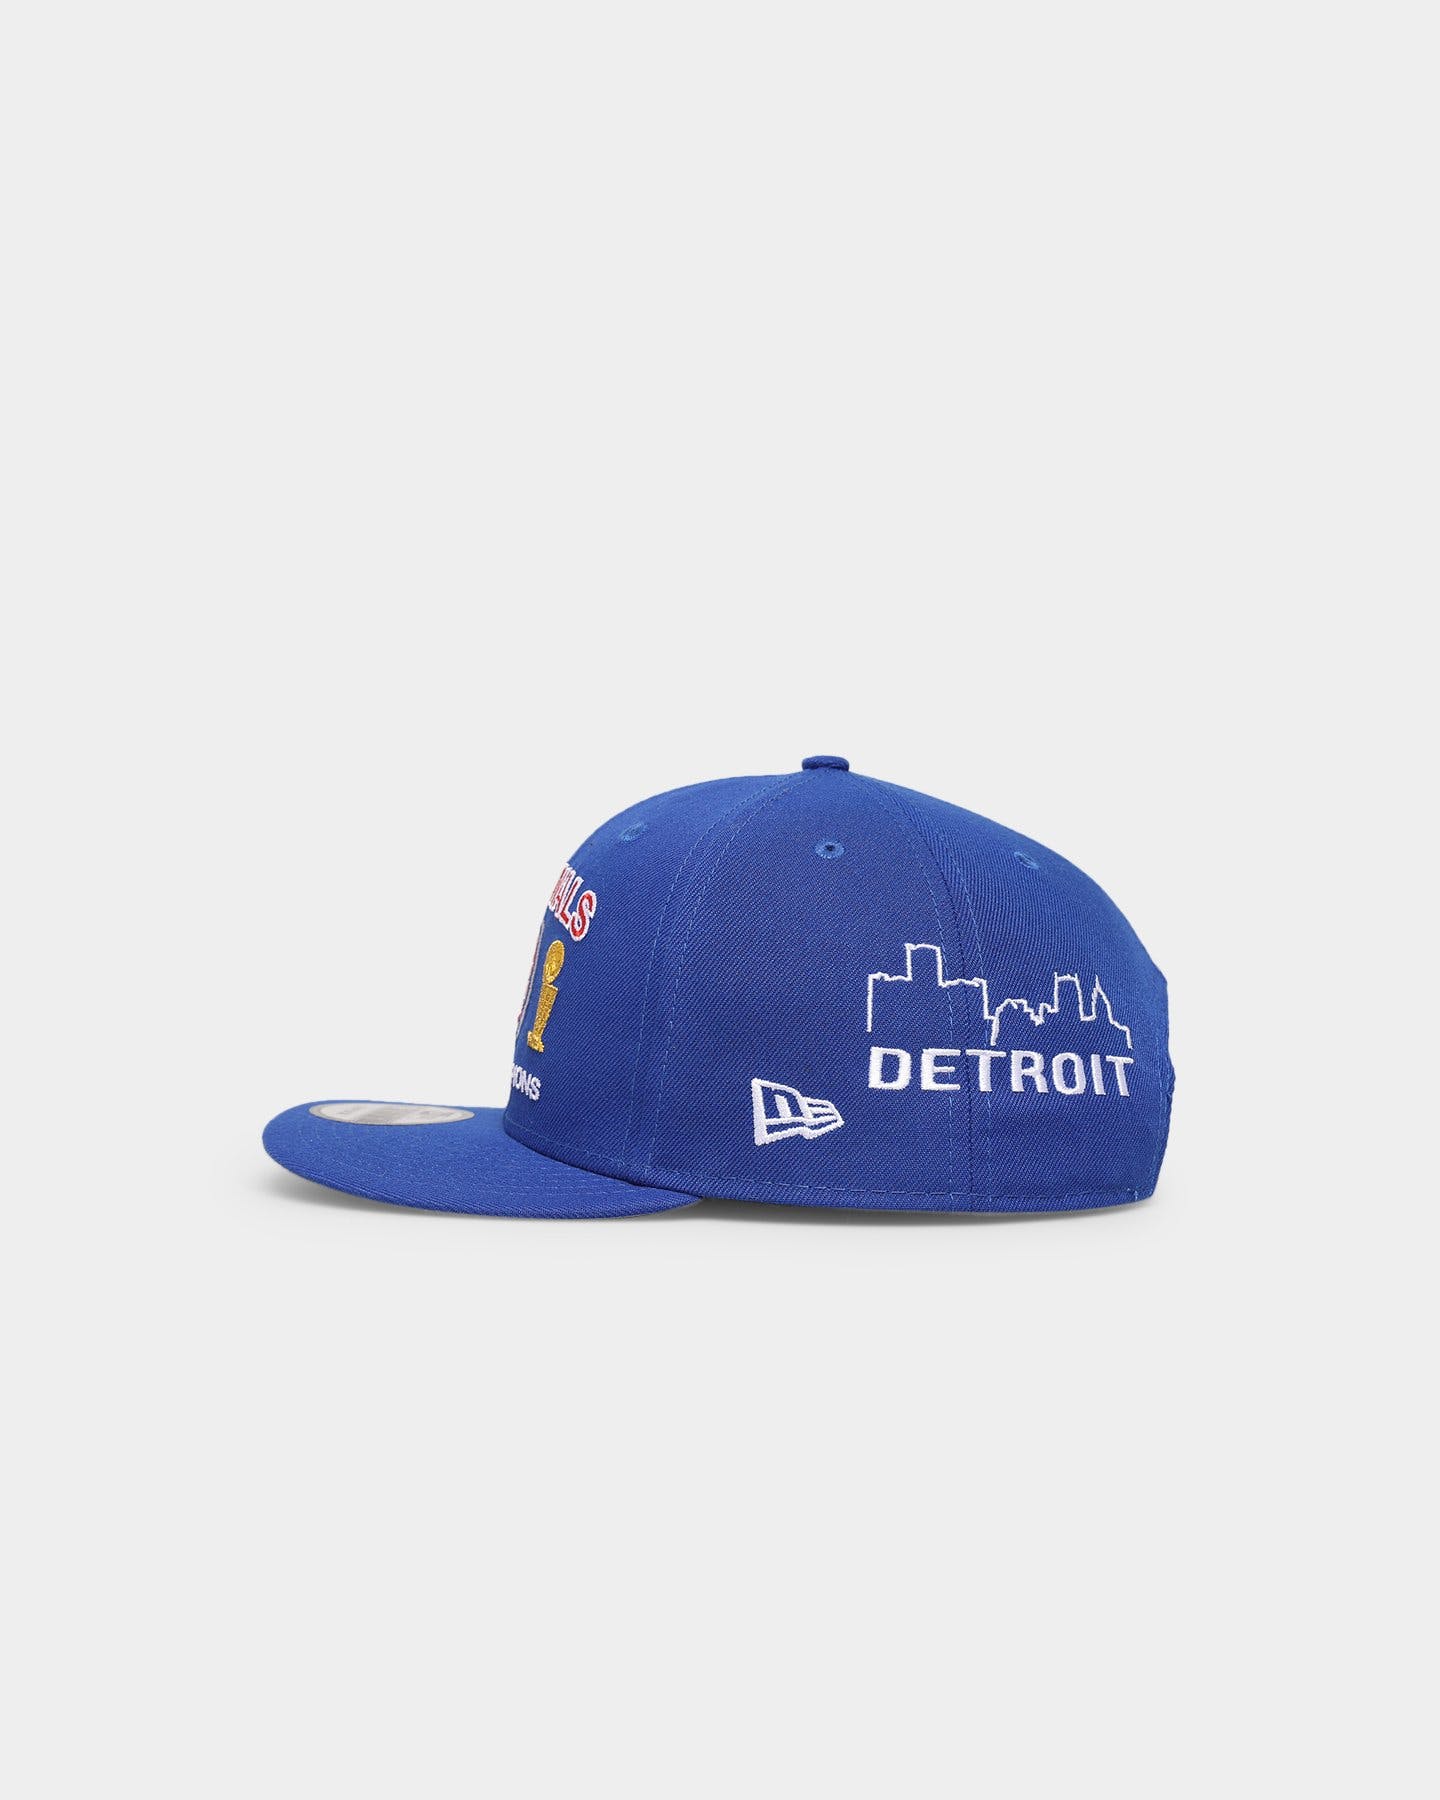 New Era Detroit Pistons NBA Fan Shop